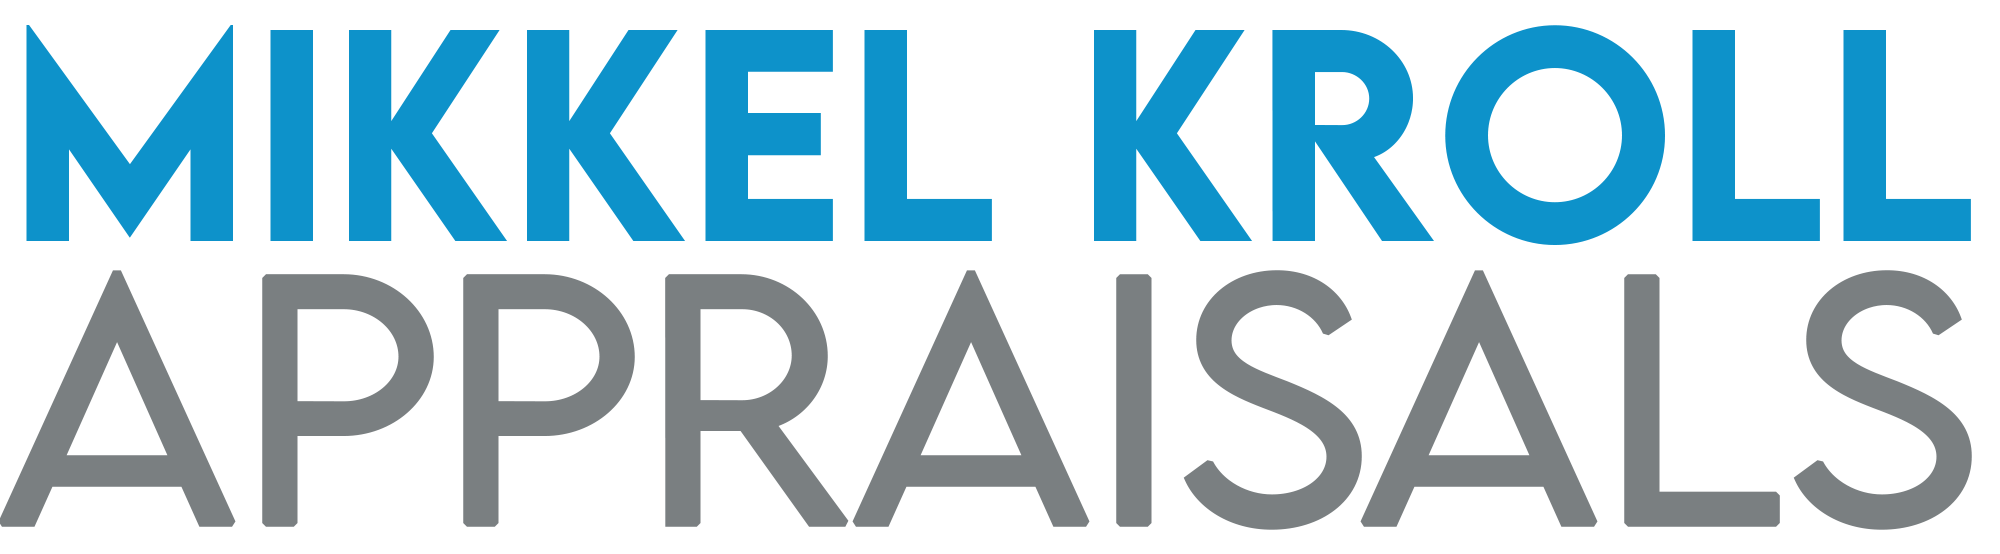 mikkel kroll appraisals placeholder logo